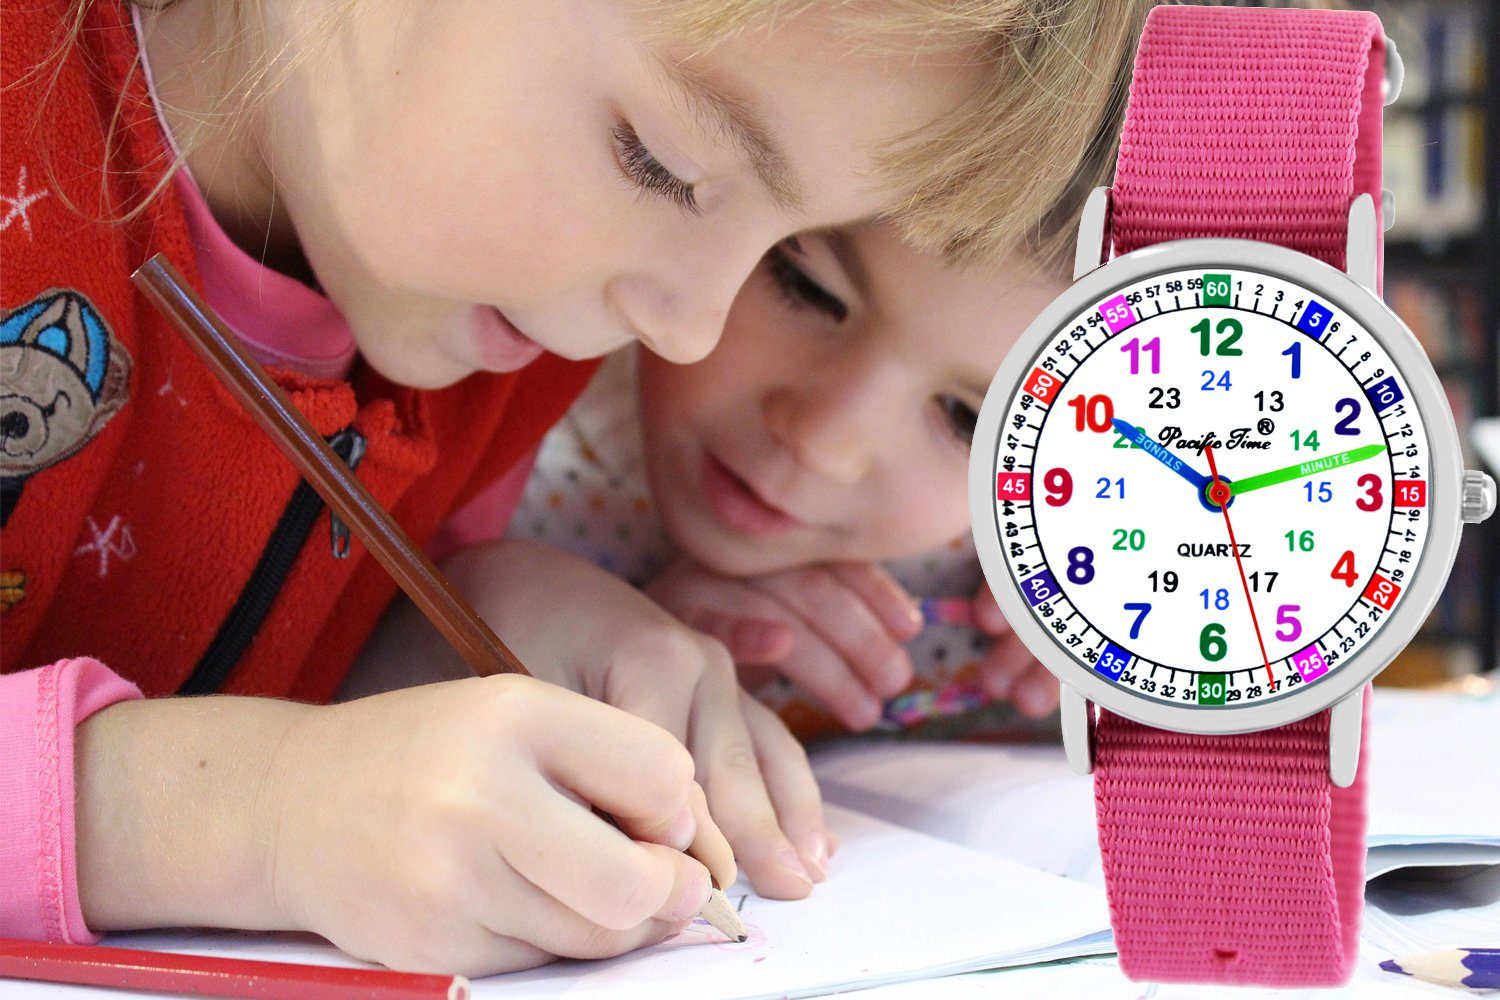 Kinder Kids (Gr. 92 -146) Pacific Time Quarzuhr Lernuhr Mädchen Kinderuhr Set 2 Wechselarmband Armbanduhr rosa 11150, + ein Armb